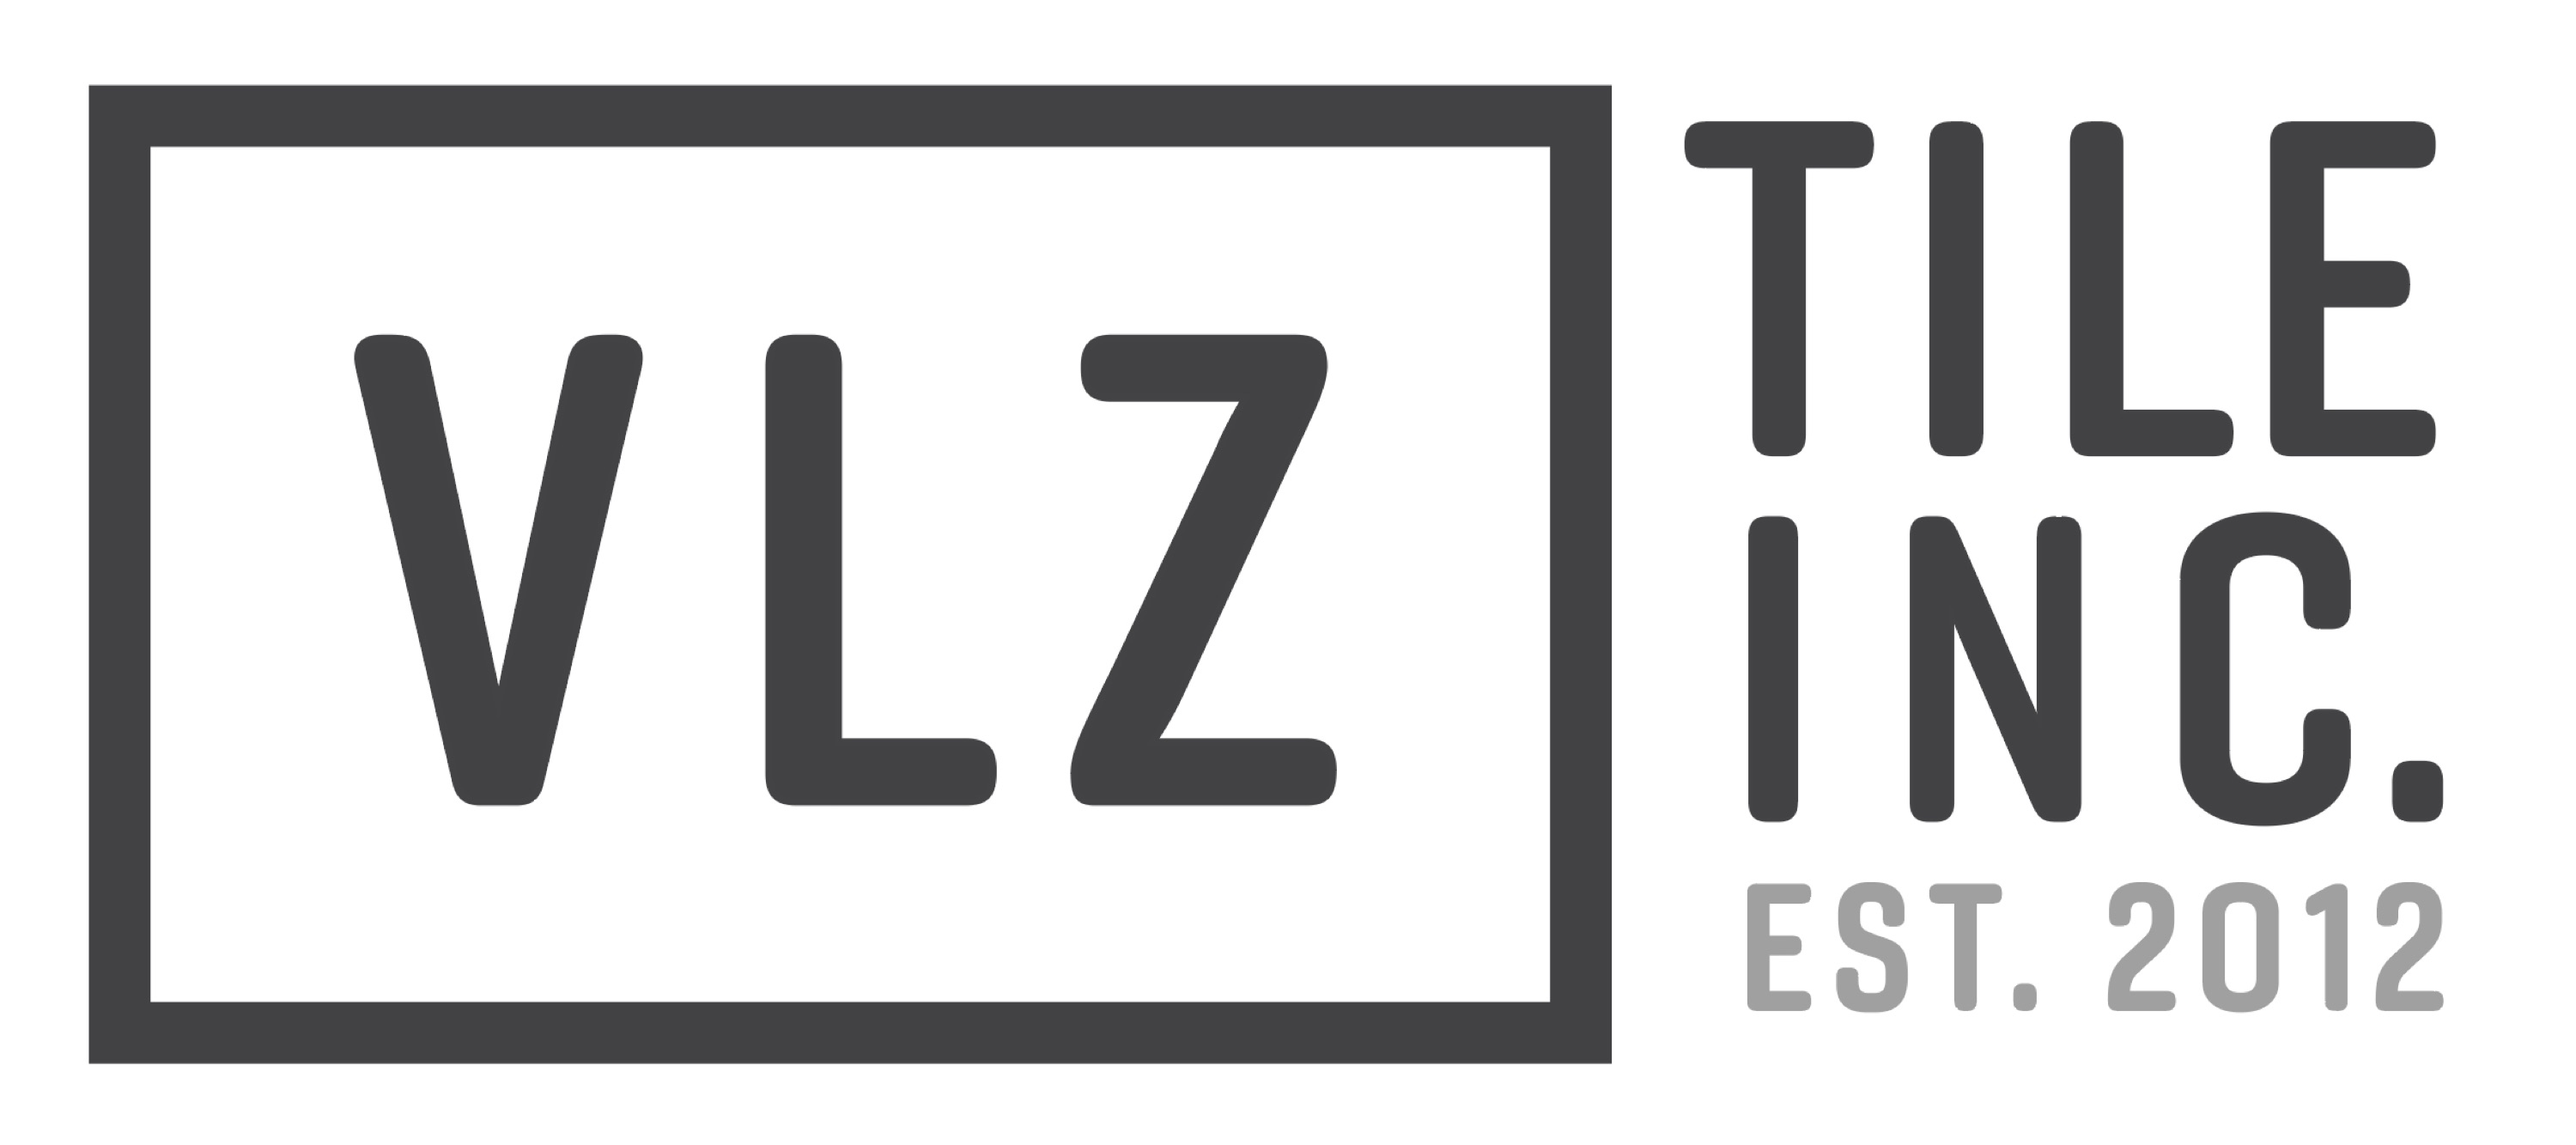 Velazquez Tile, Inc. Logo